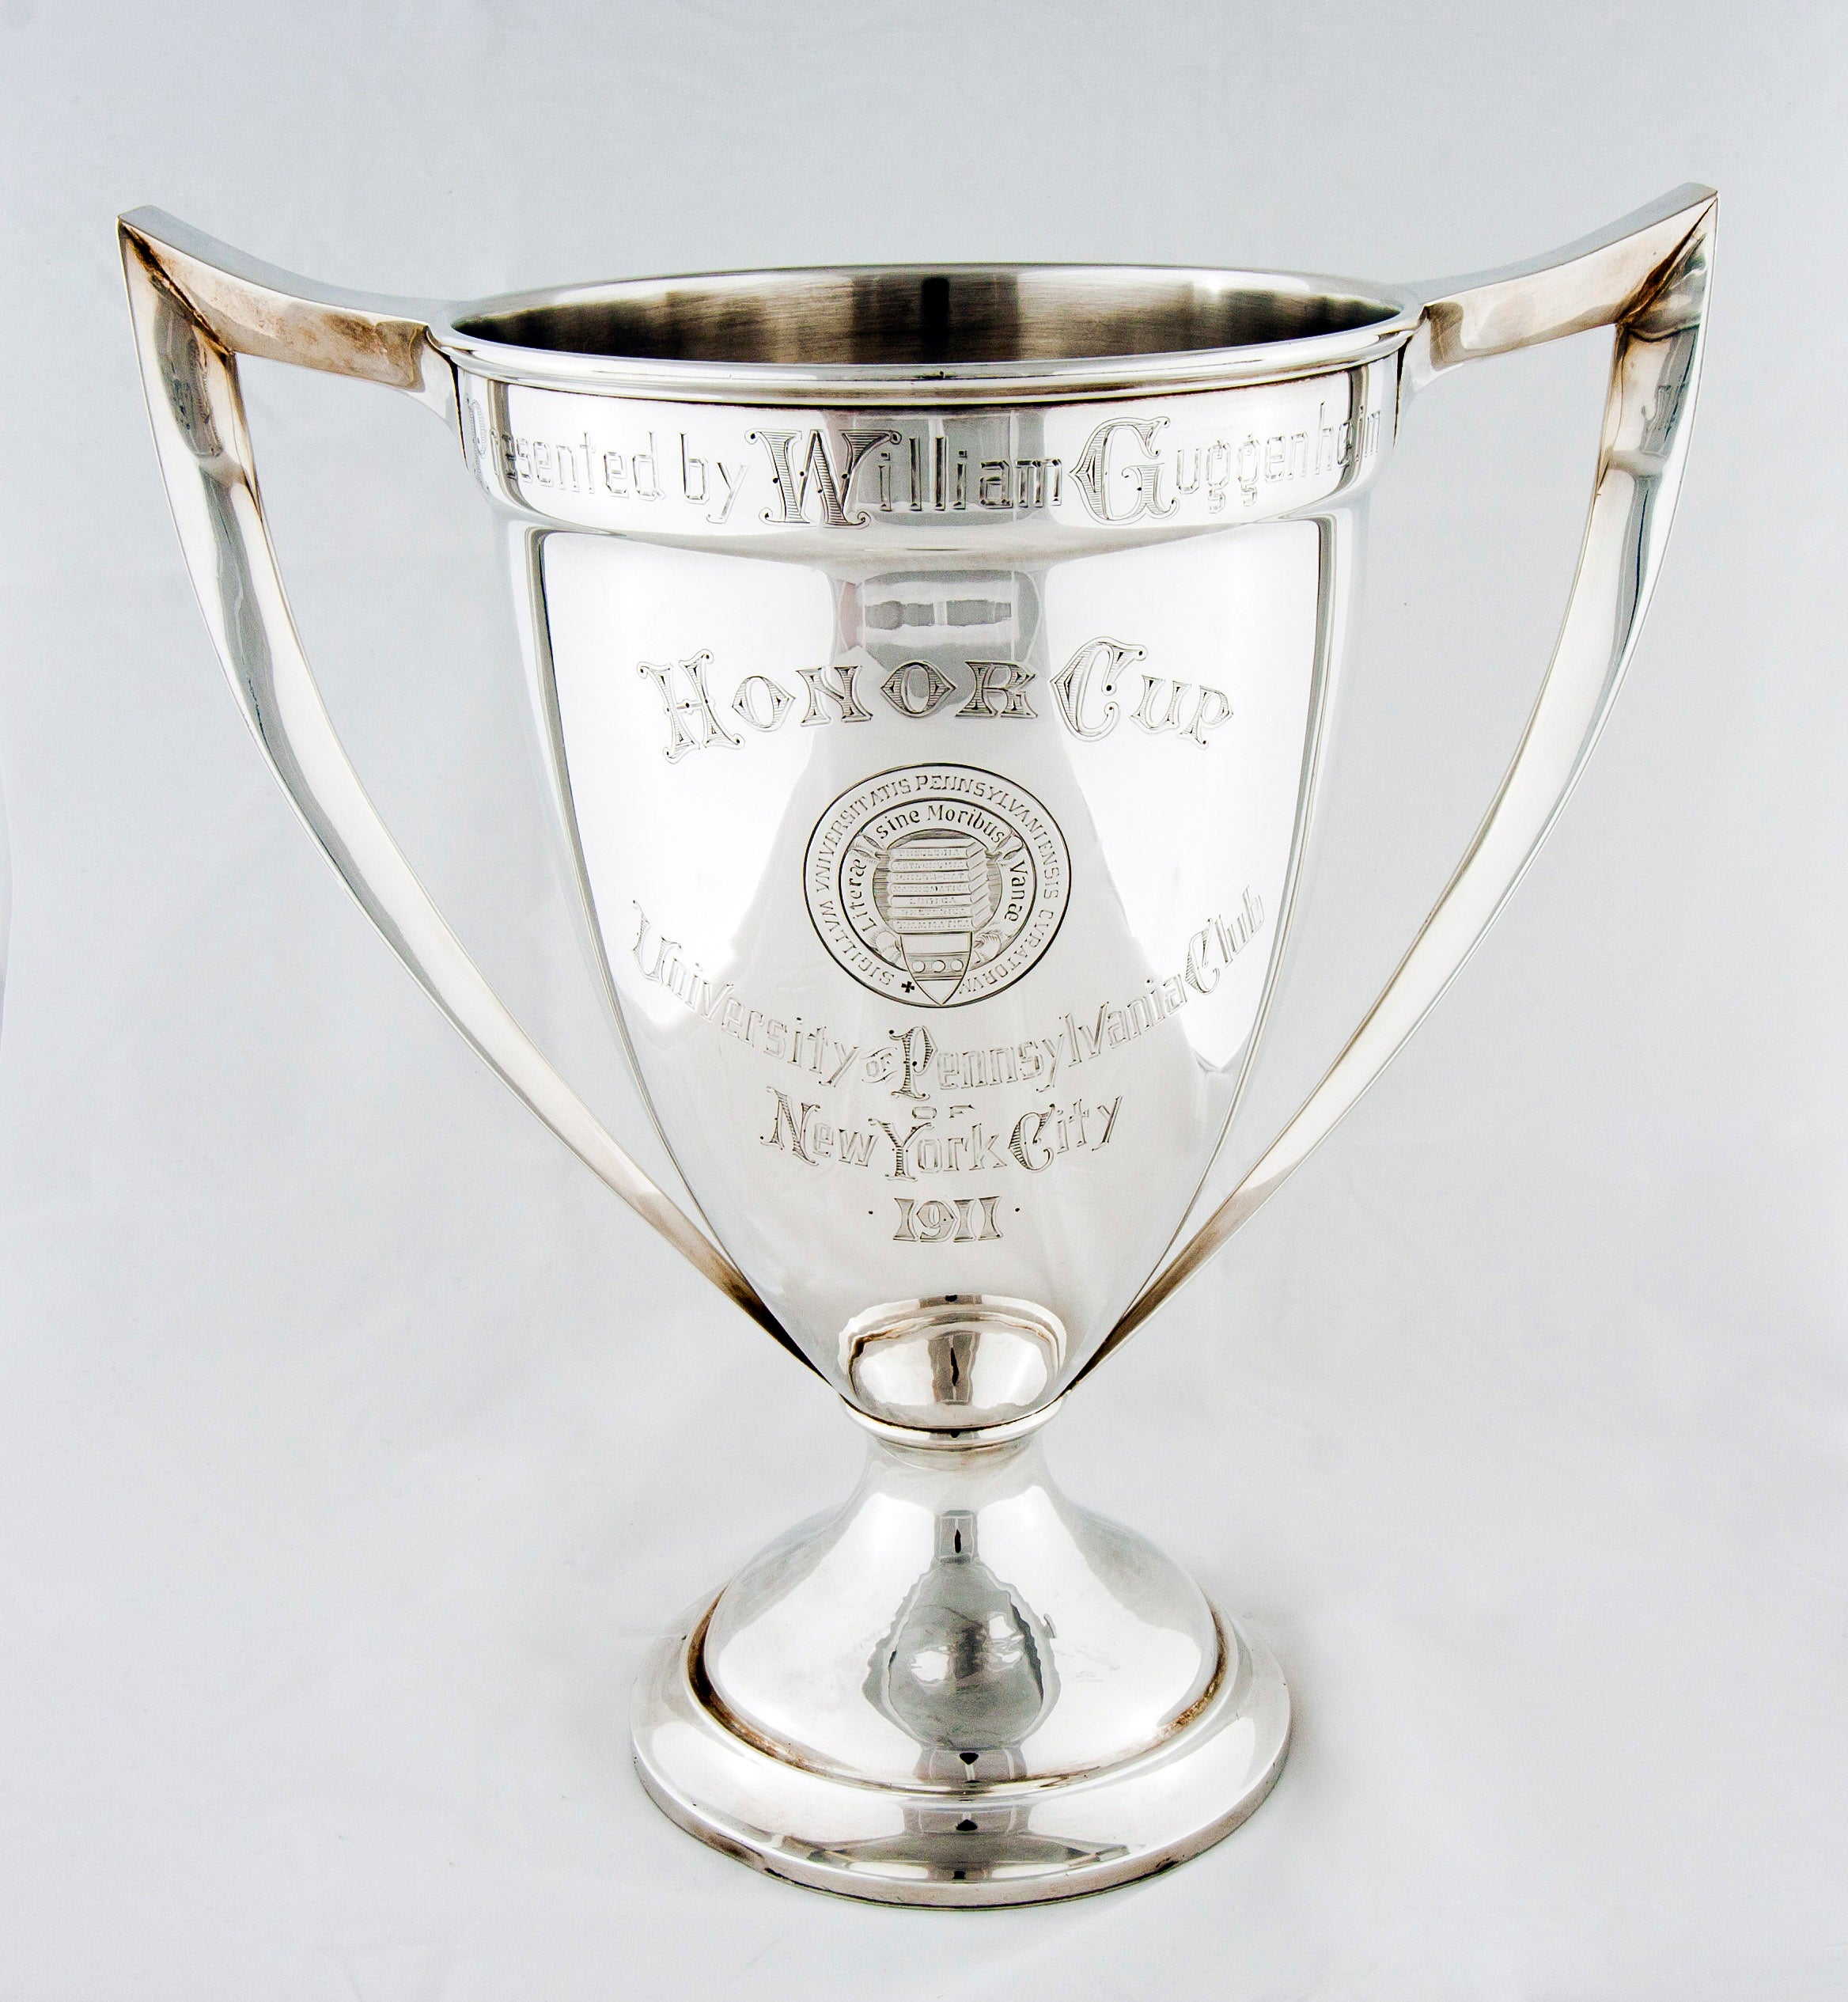 1911 Guggenheim Cup